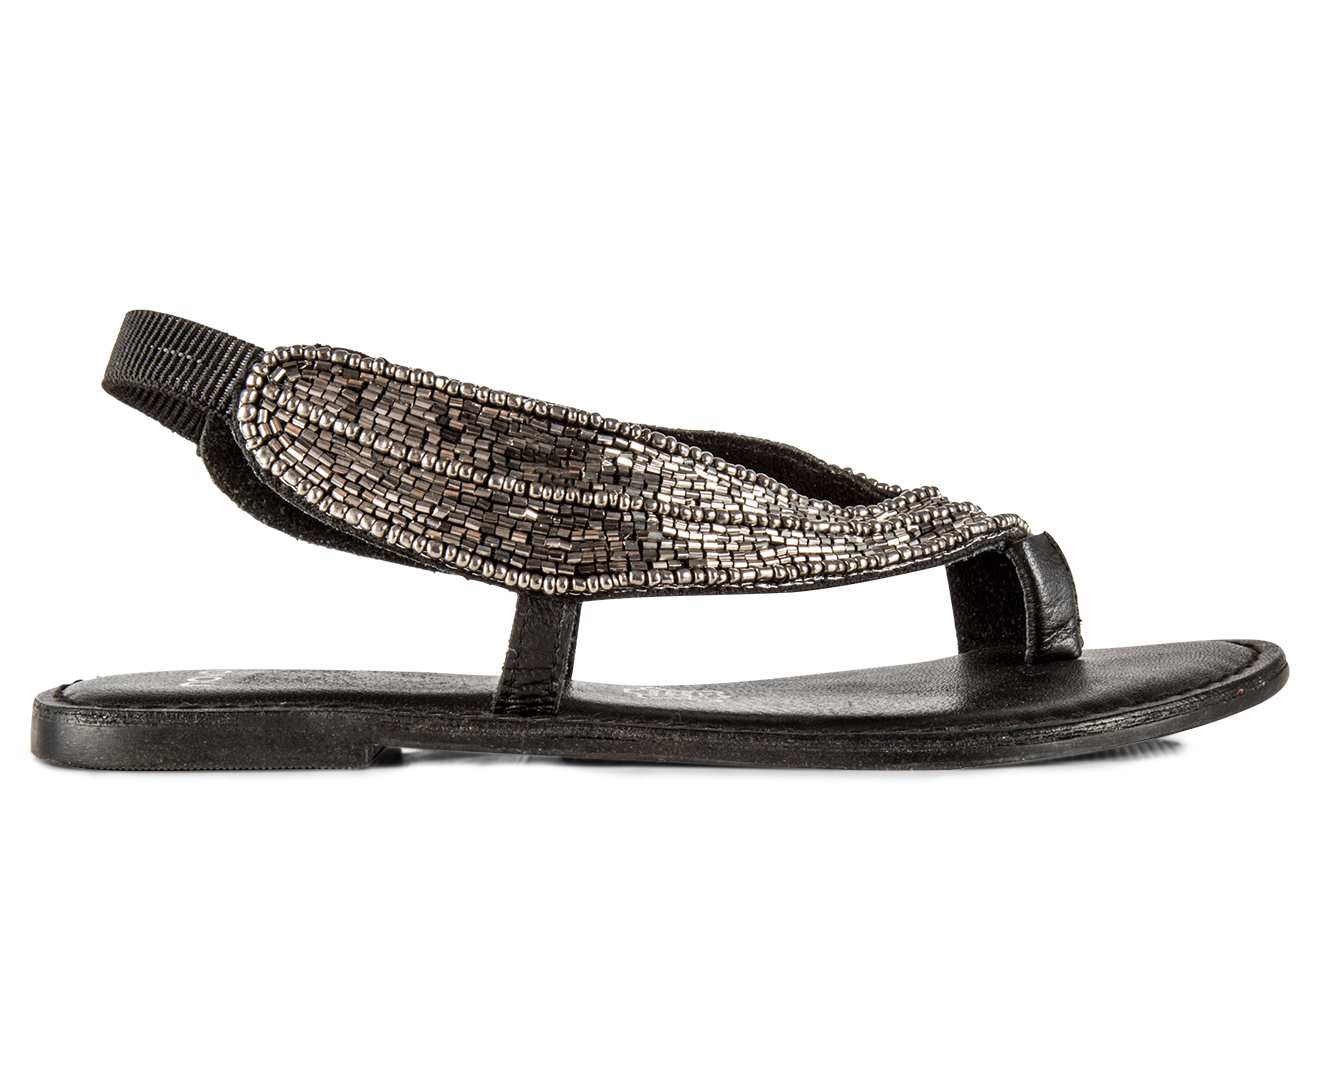 Novo Women's Samson Sandals - Black | Catch.com.au